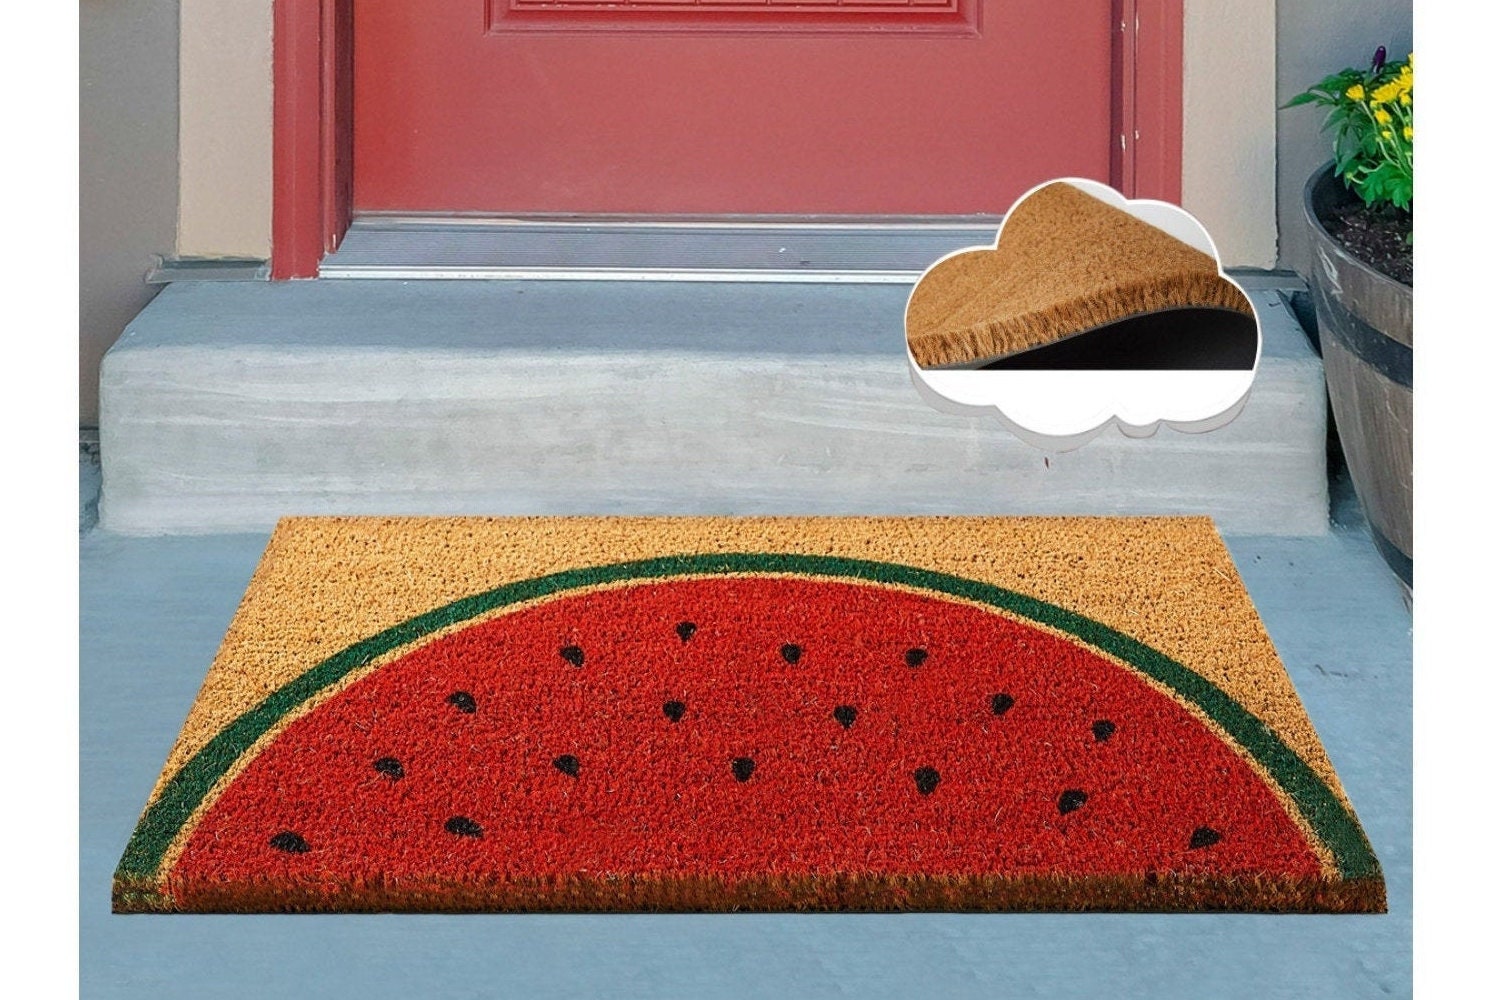 Summer Vibes Doormat Watermelon Decor Summer Gifts Unique Doormat Coir Doormat Outdoor Welcome Mat Housewarming Gift